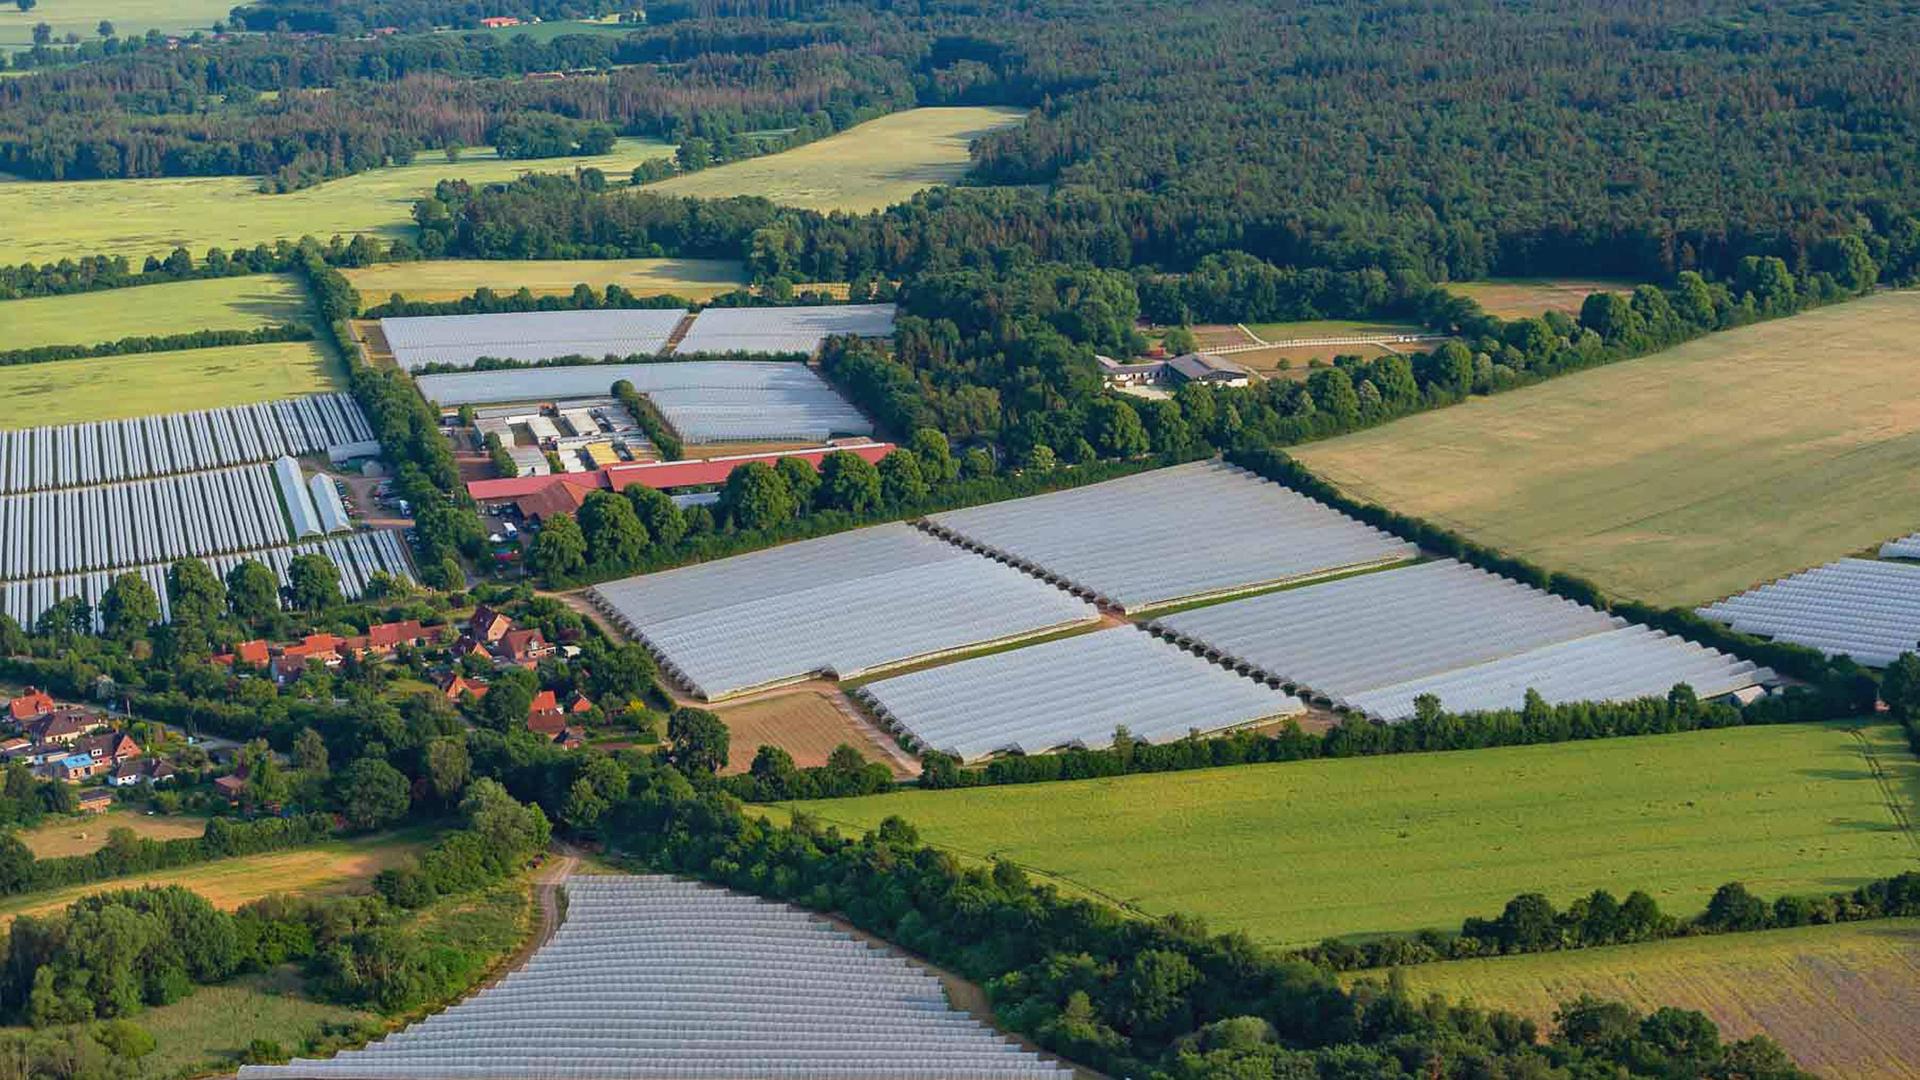 Eine Luftaufnahme zeigt große Solarparkflächen zwischen Äckern in Mecklenburg-Vorpommern. Mittendrin ein kleines Dorf.